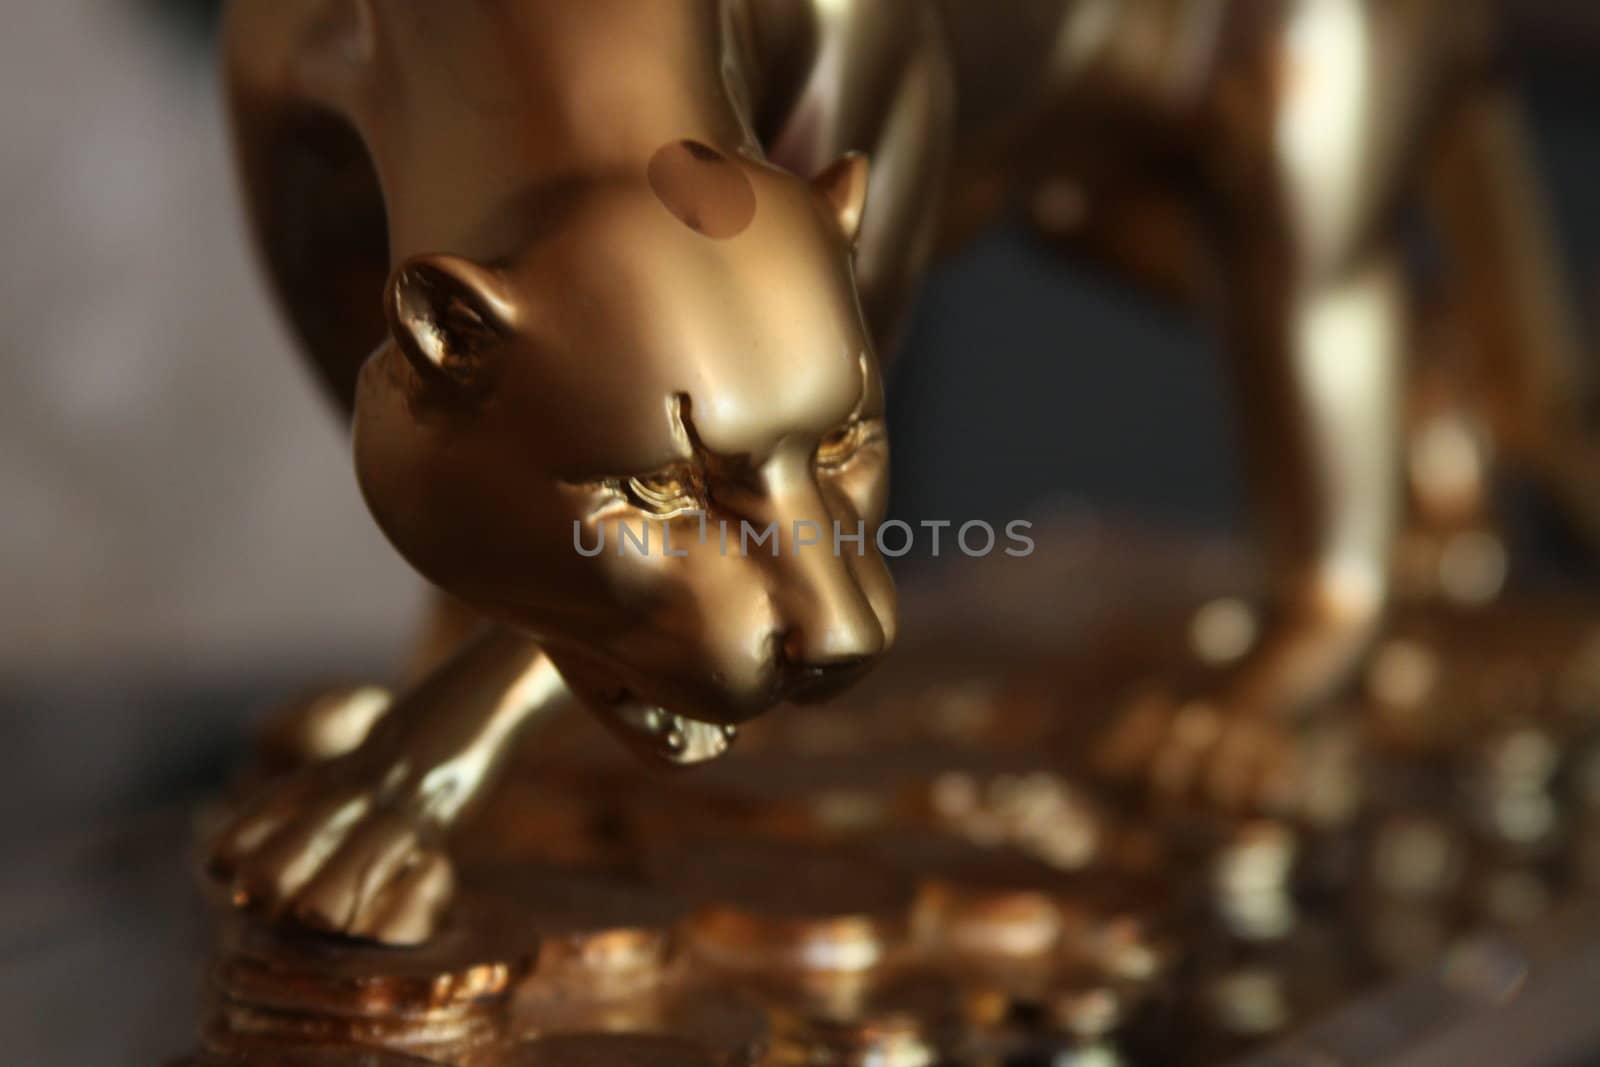 Luxury Golden Jaguar Figurine close up.